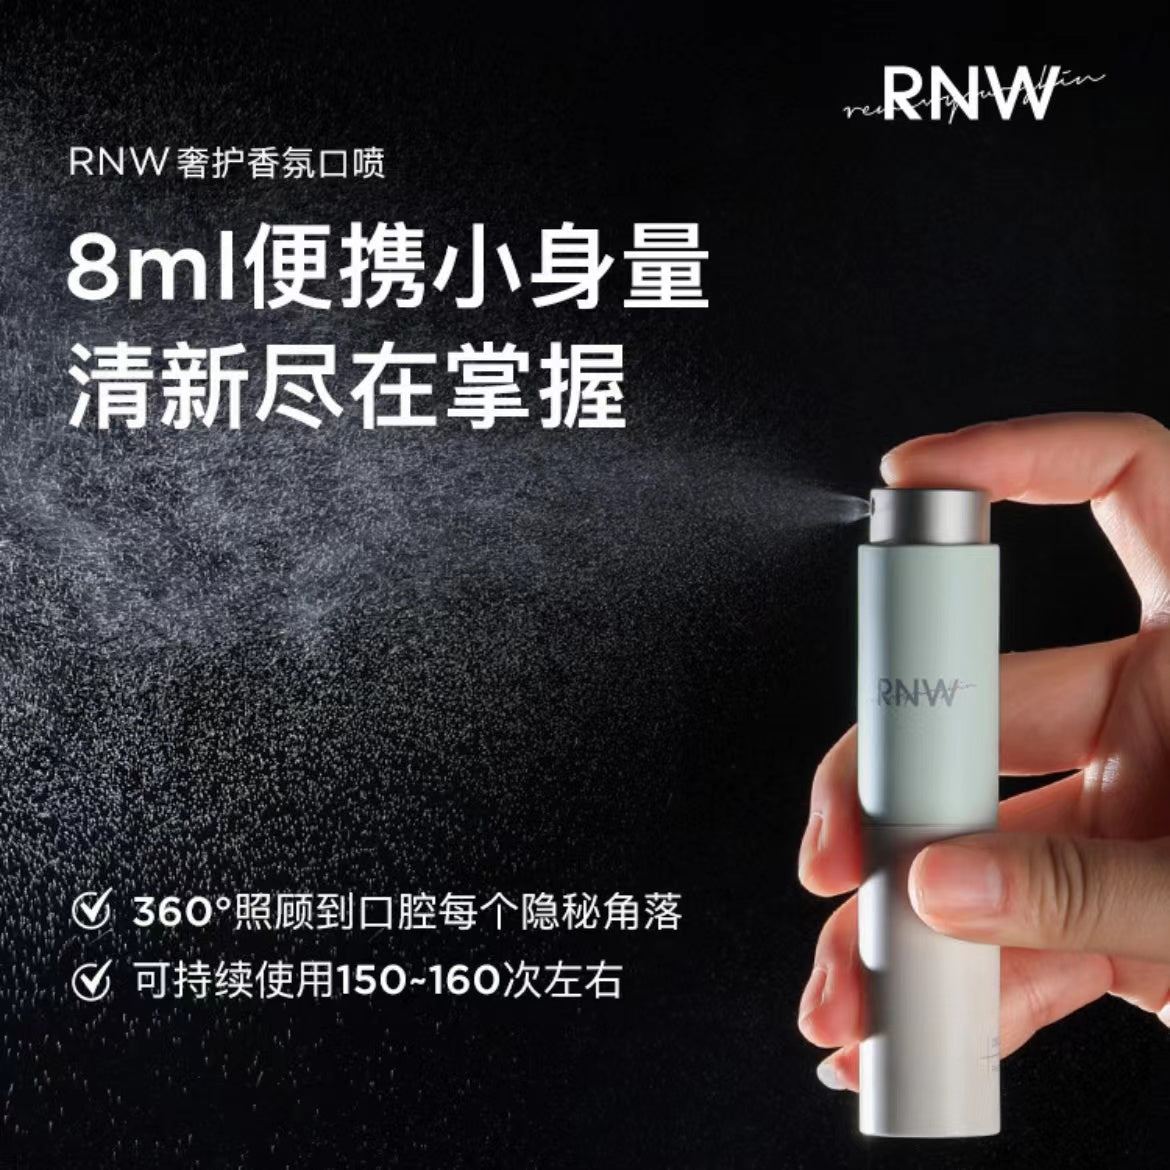 RNW Fragrance Breath Spray 8ML 如薇香氛口喷